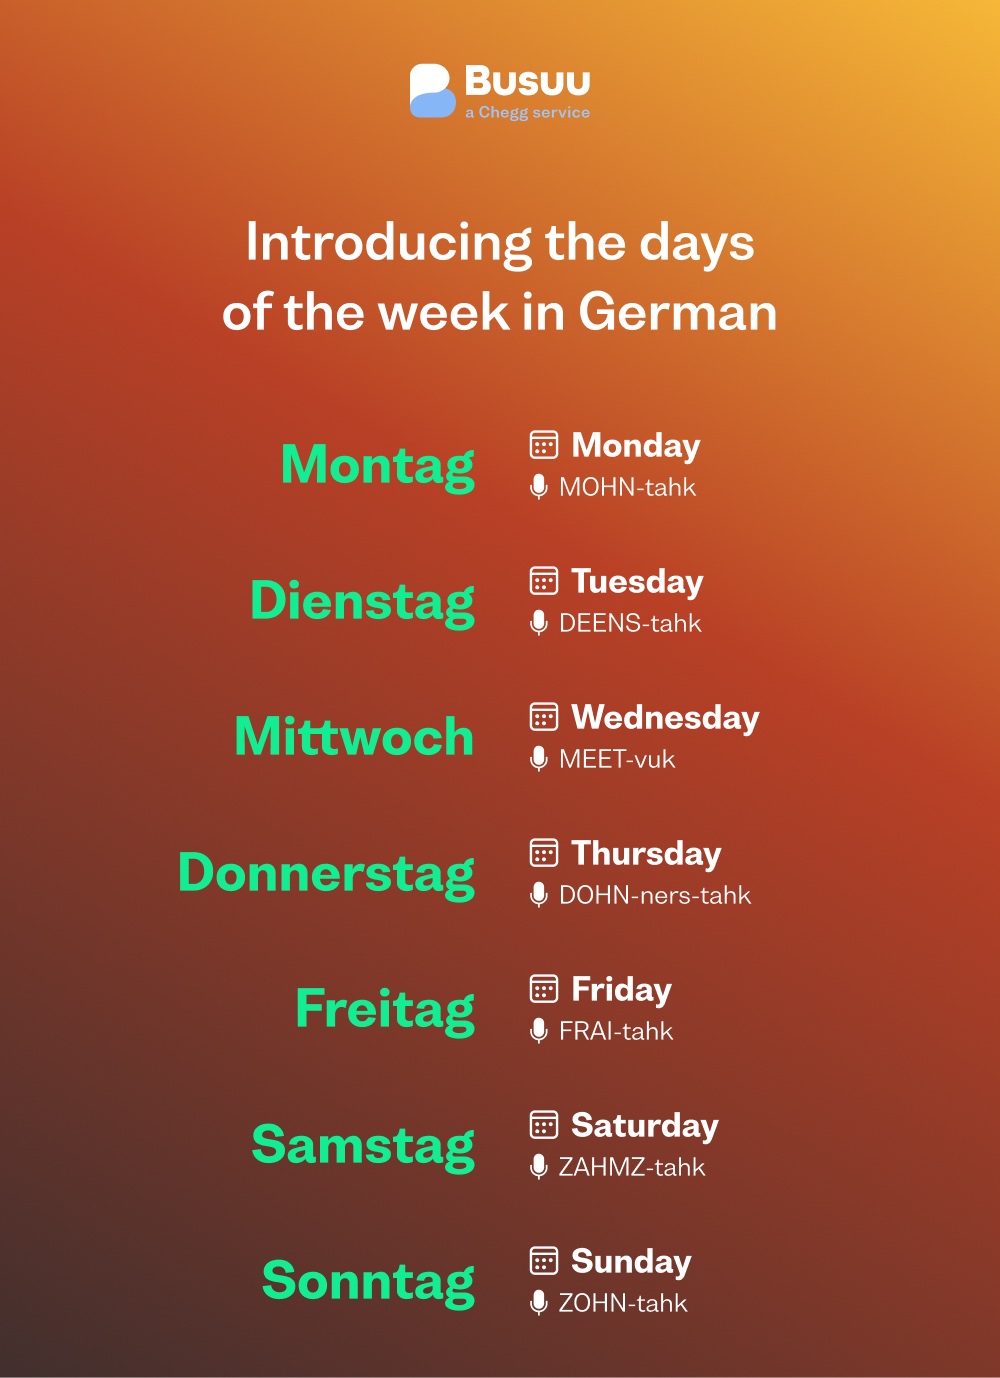 Days of the week in German